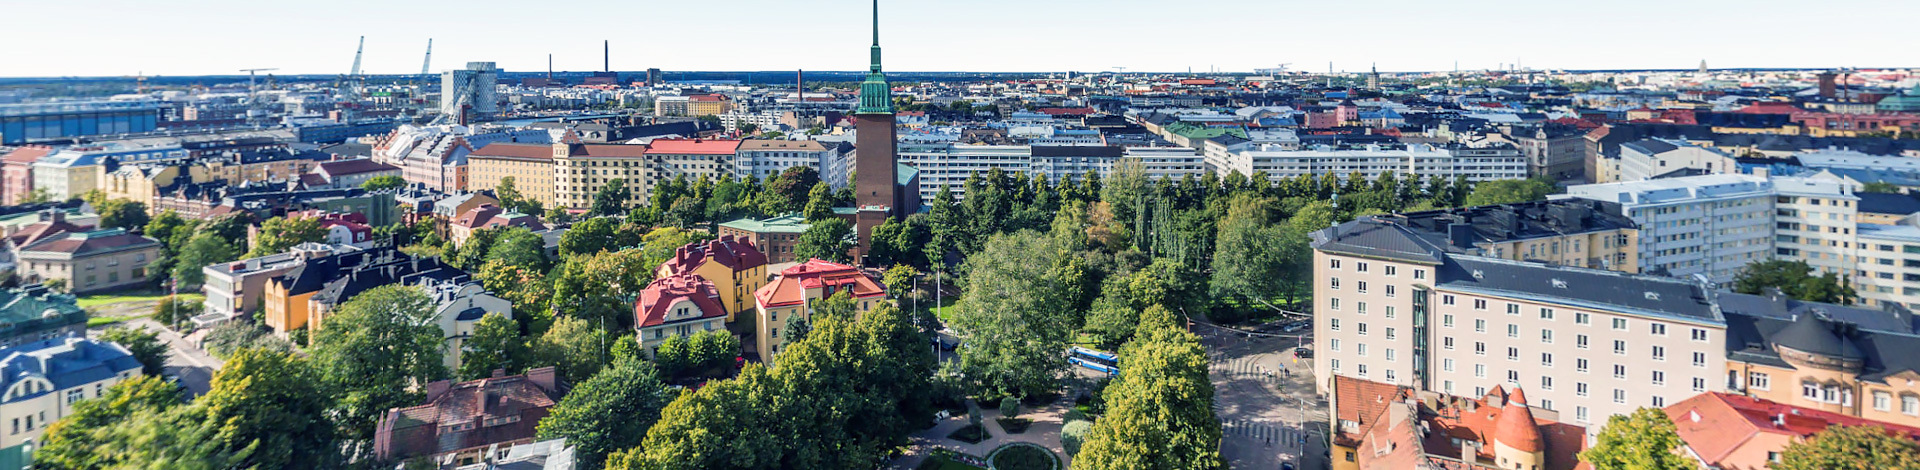 View of Punavuori, Helsinki